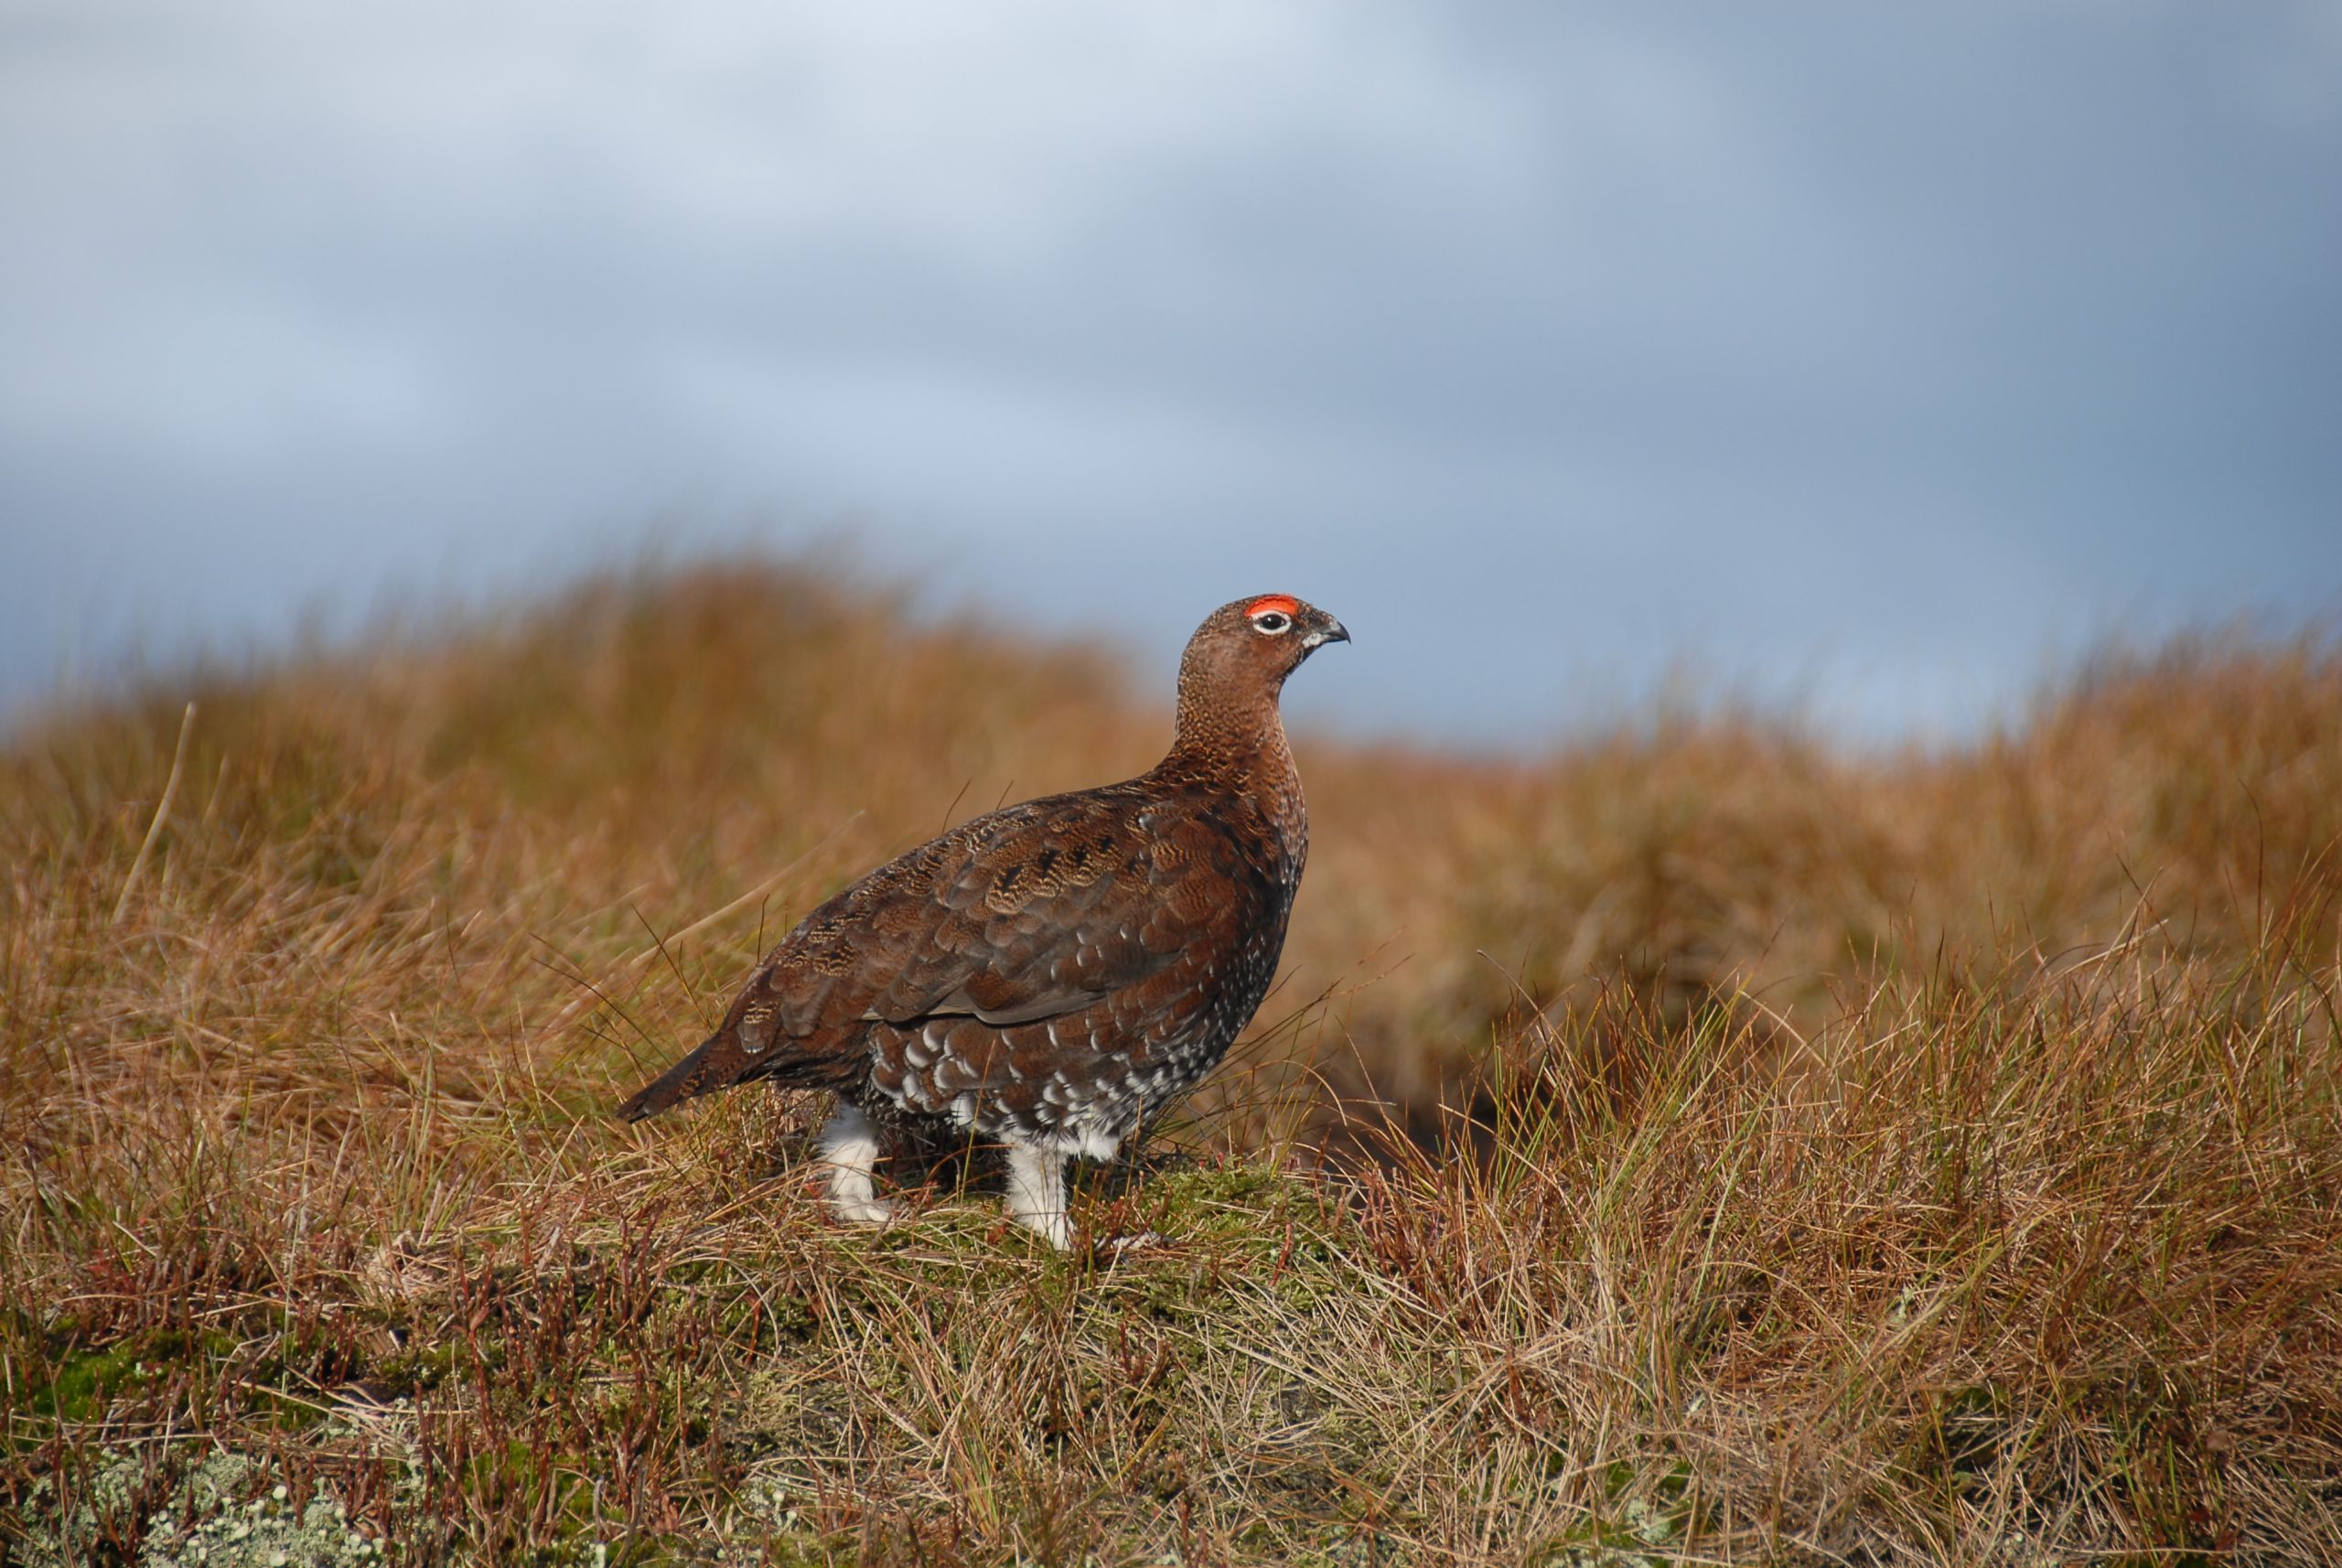 Image of a Grouse bird walking across moorland grass